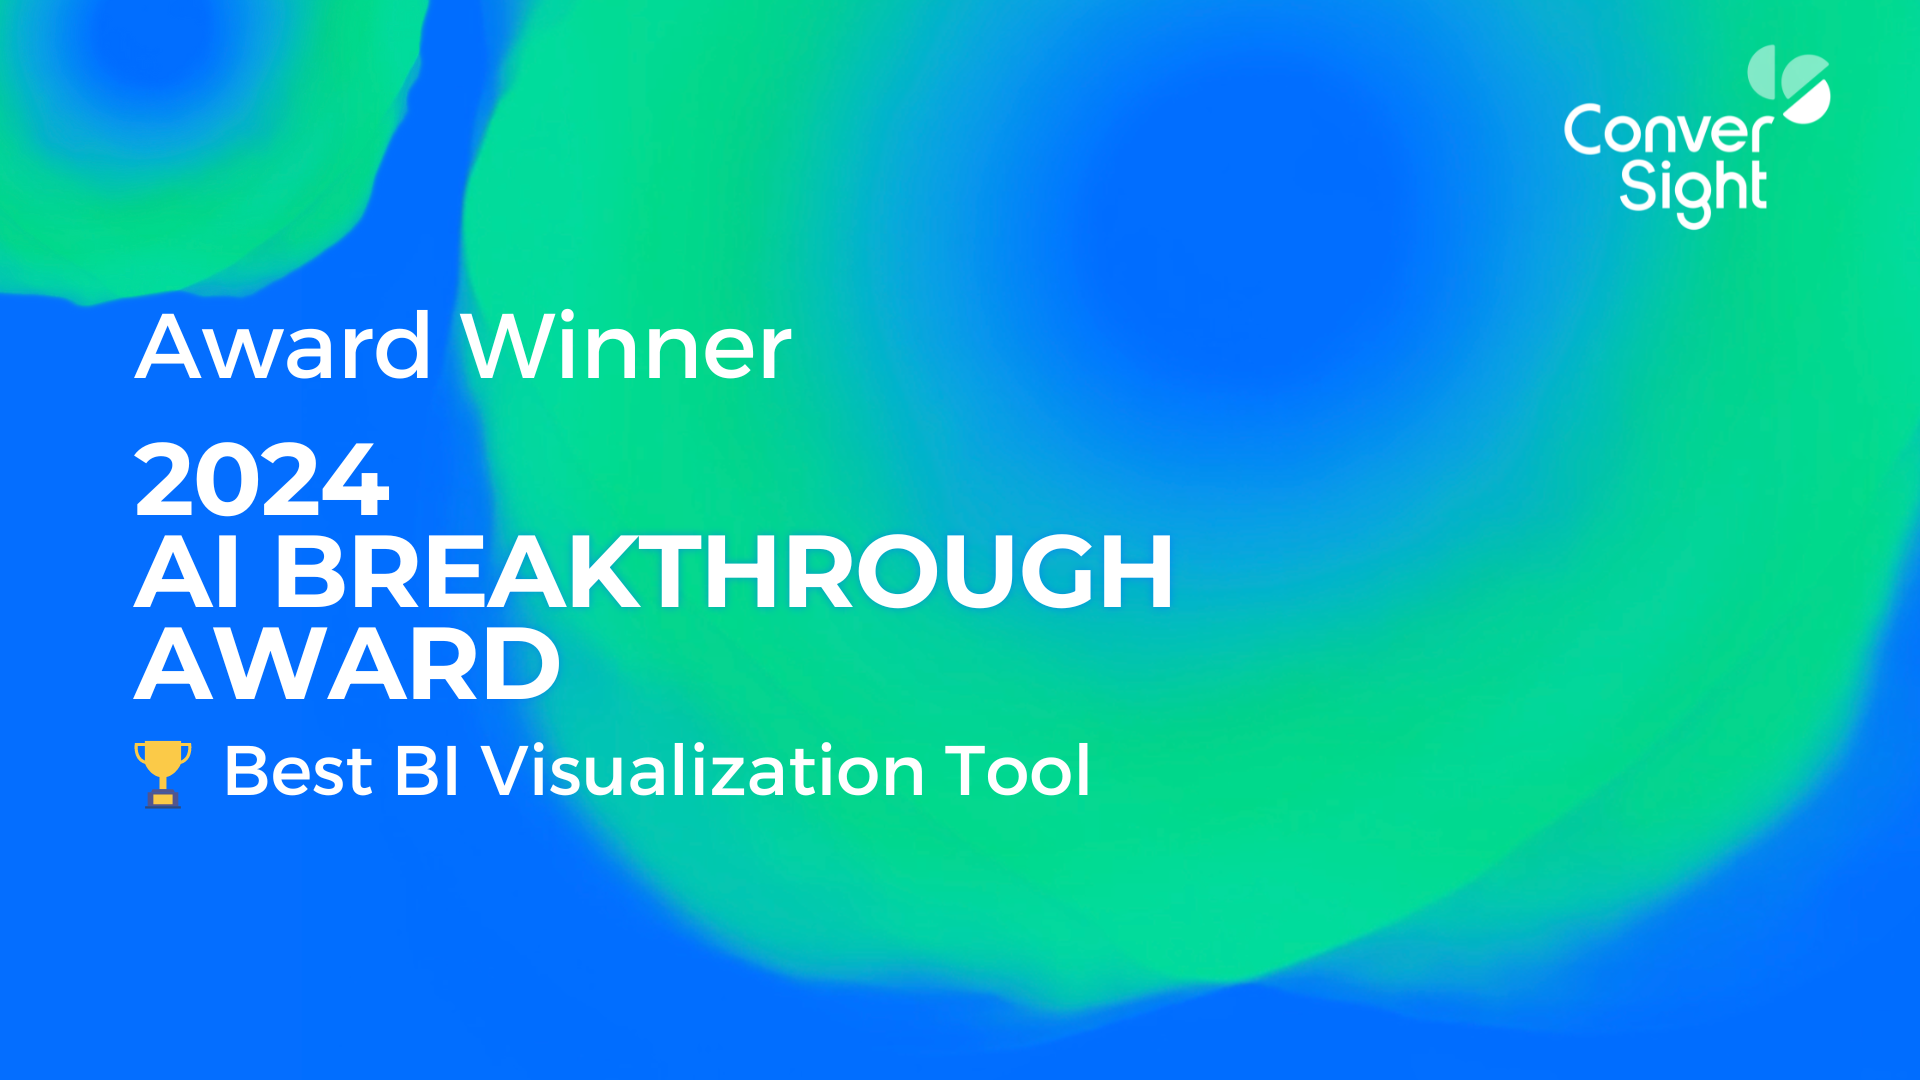 AI Breakthrough Award 2024 